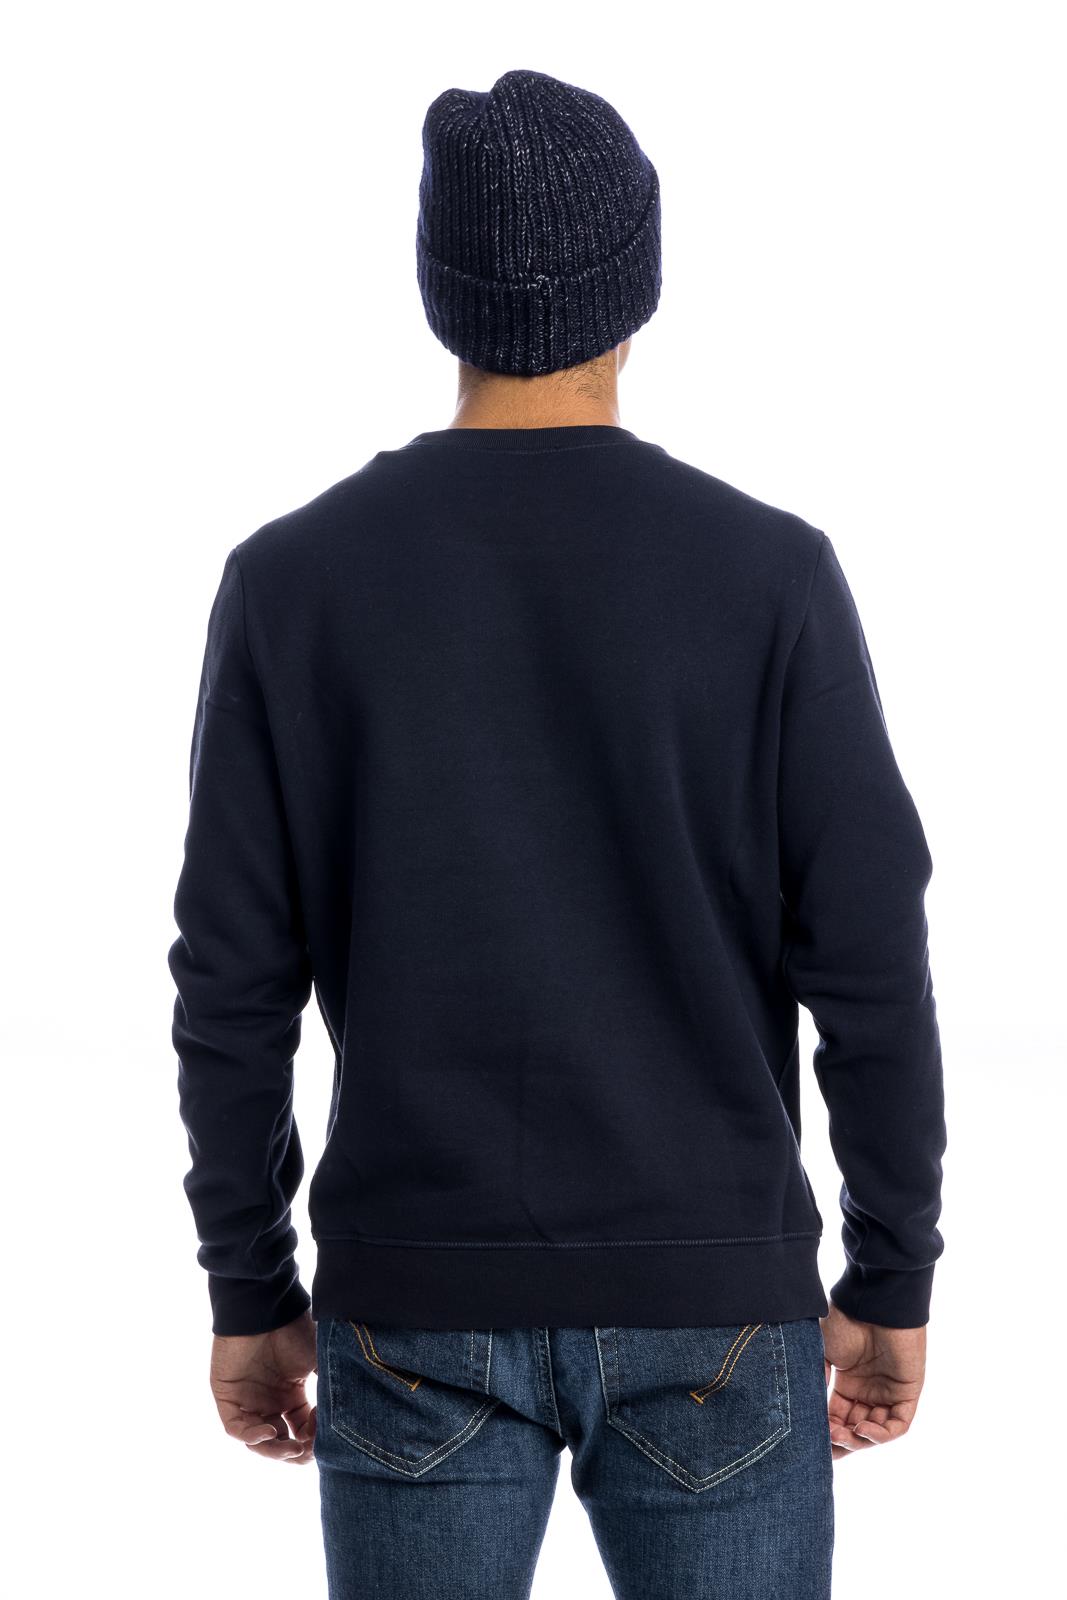 Dondup Men's Sweatshirt